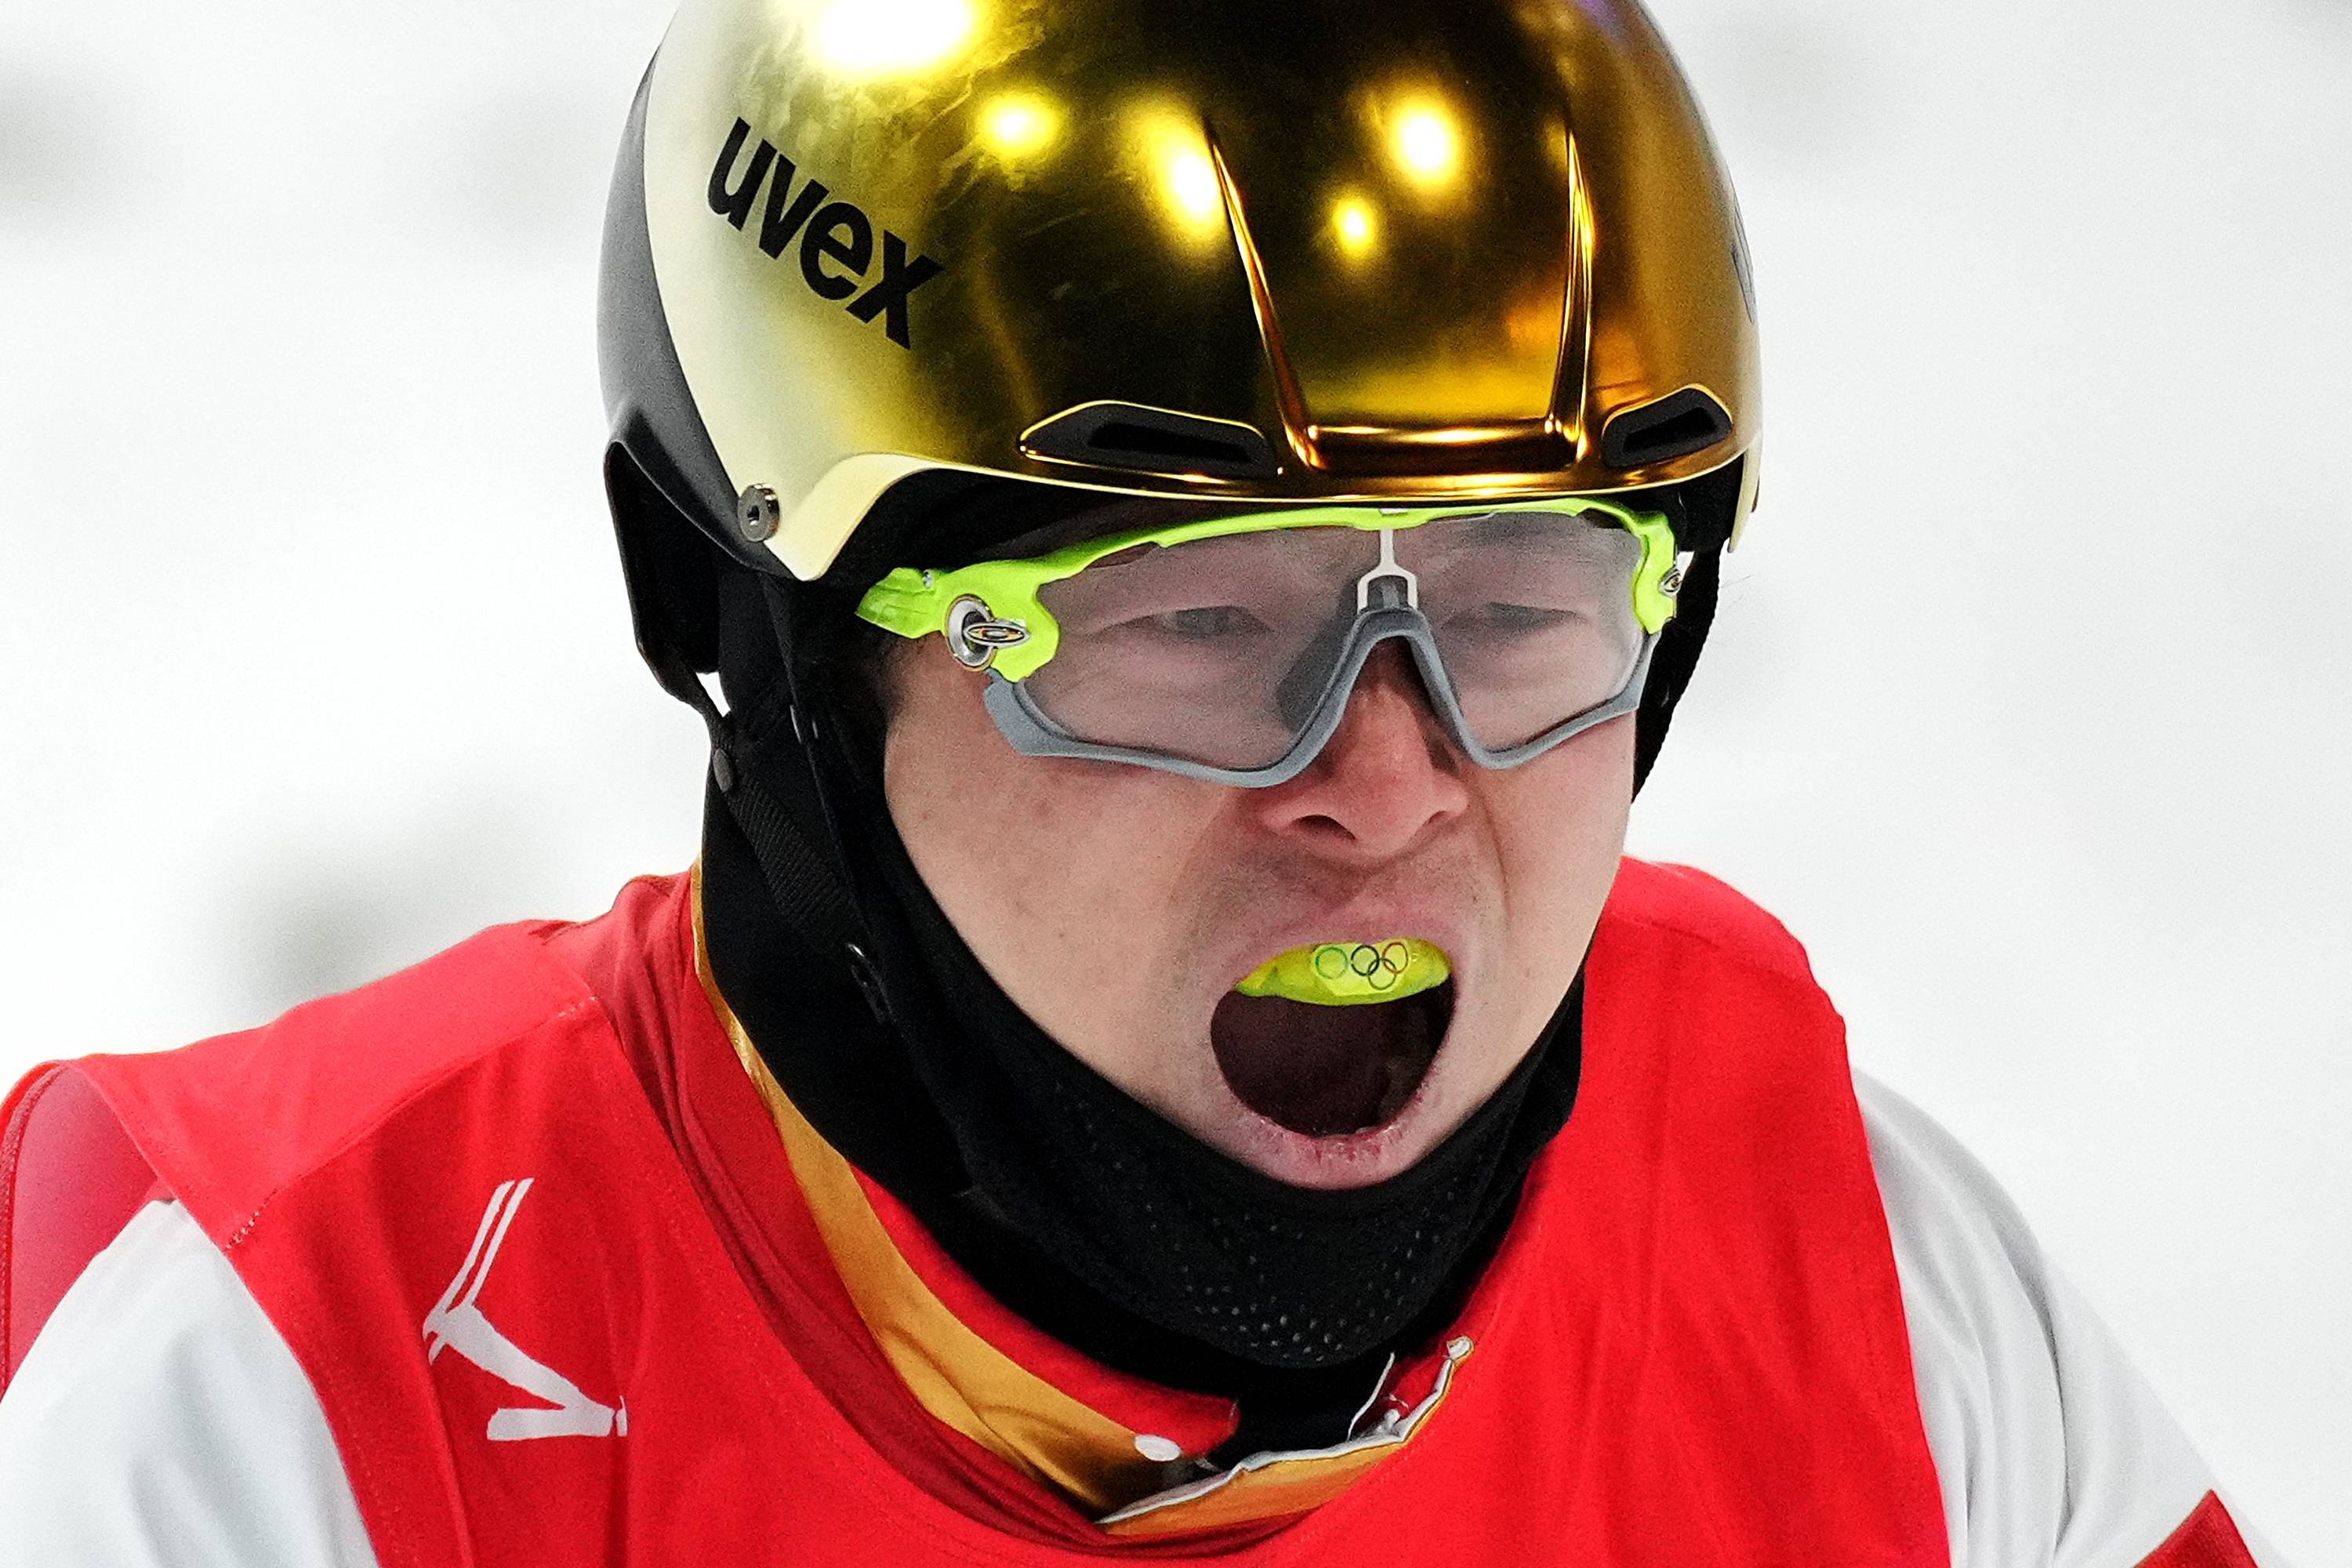 CBA|齐广璞夺得自由式滑雪男子空中技巧金牌 他的奥运五环牙套亮了